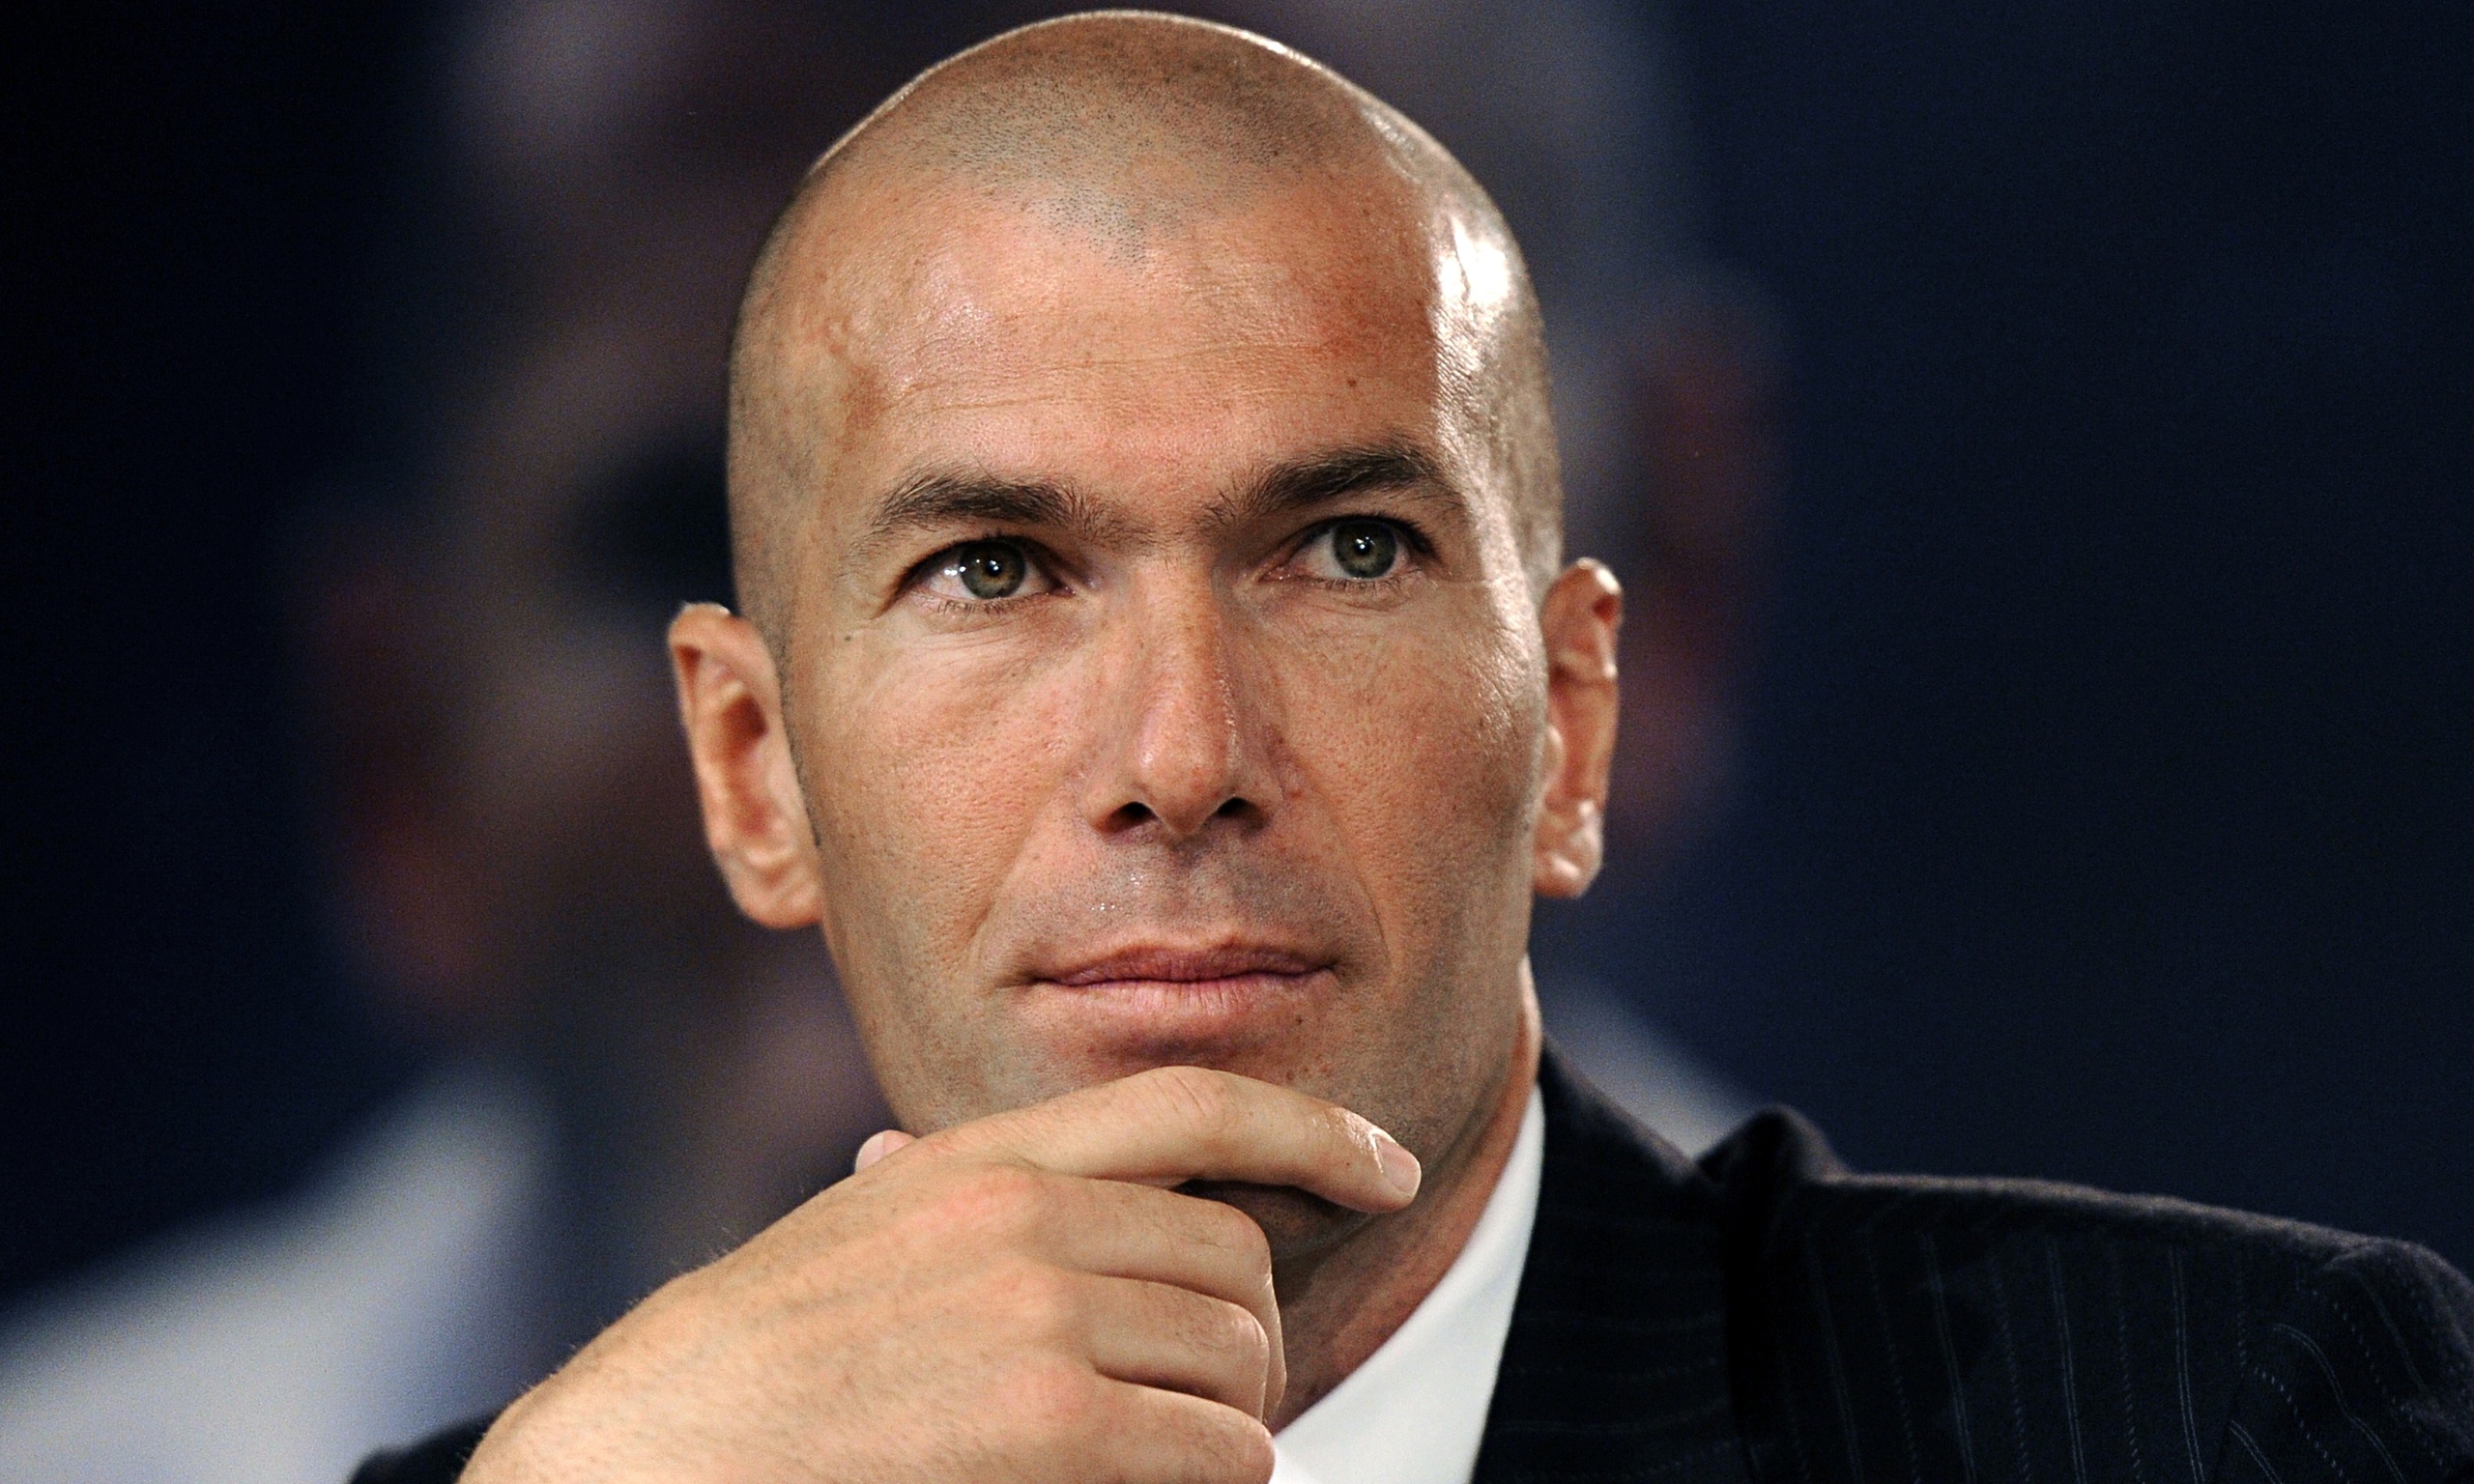 Zinedine Zidane Høyde, vekt, alder, kroppsstatistikk